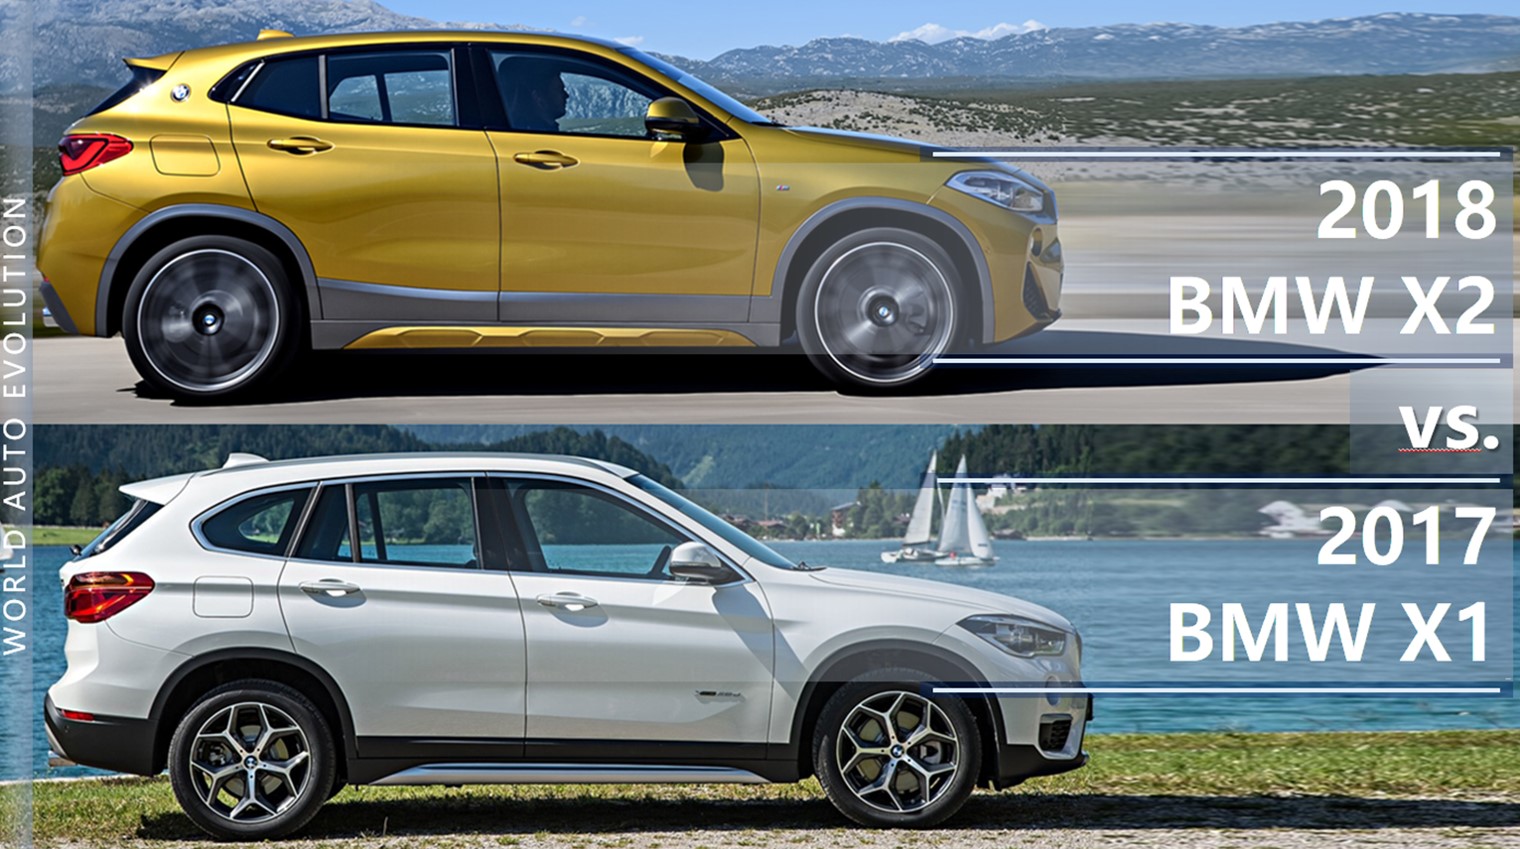 BMW-X2-vs-BMW-X1-comparison.jpg